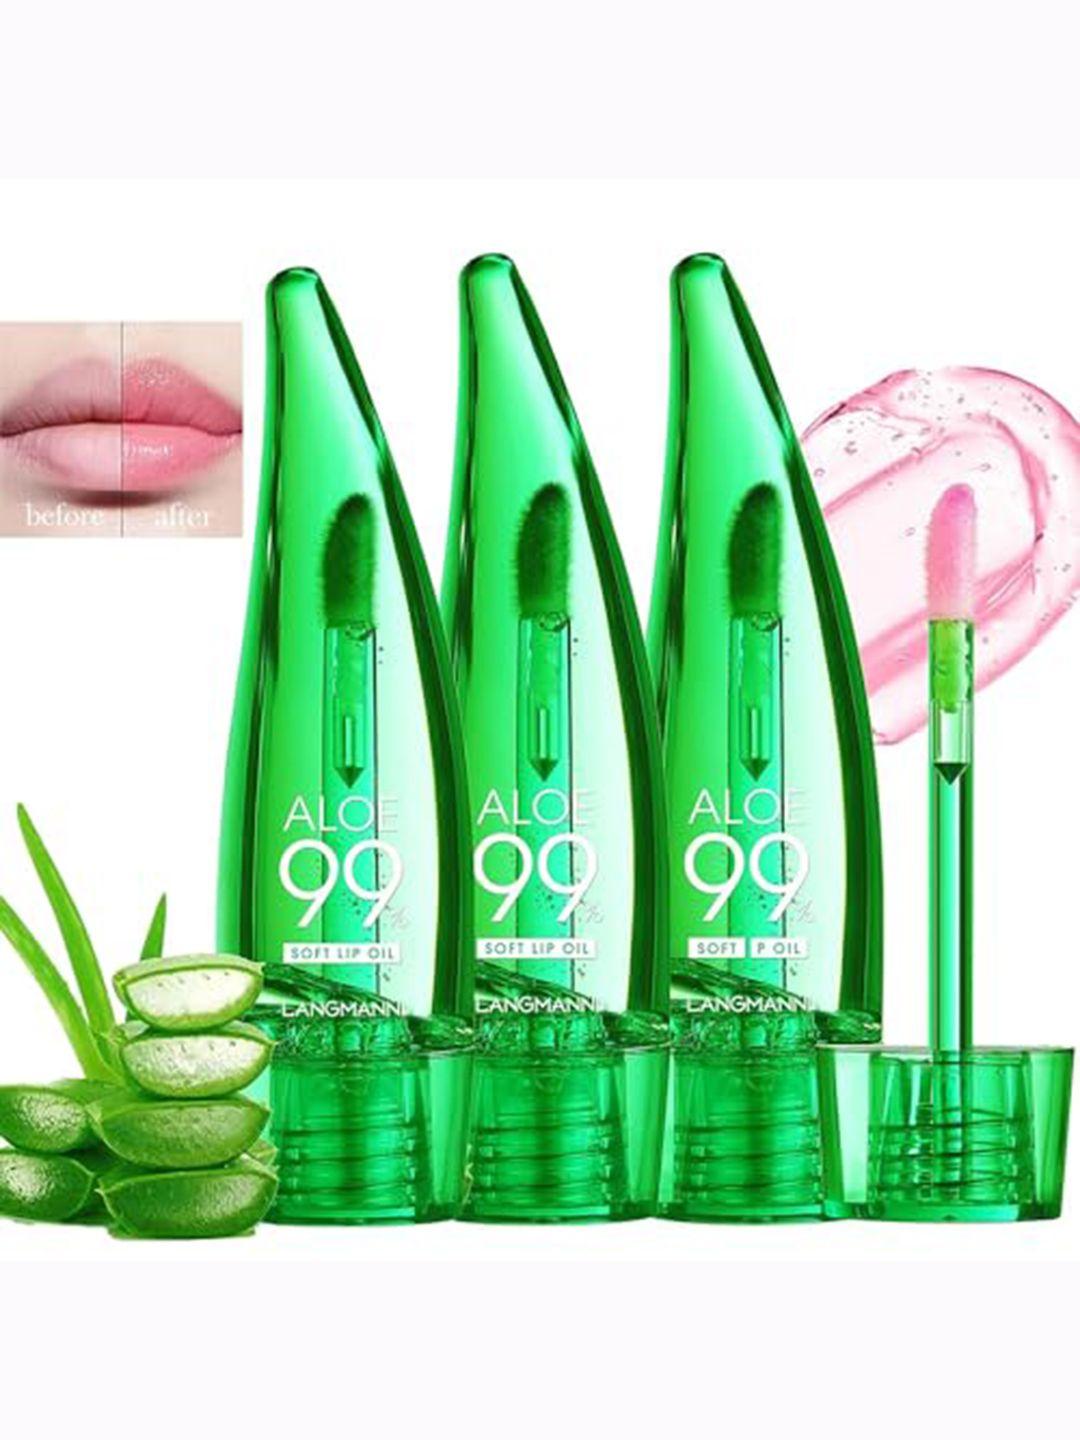 adbeni set of 3 99 aloe vera lip gloss for  natural shine - 10ml each